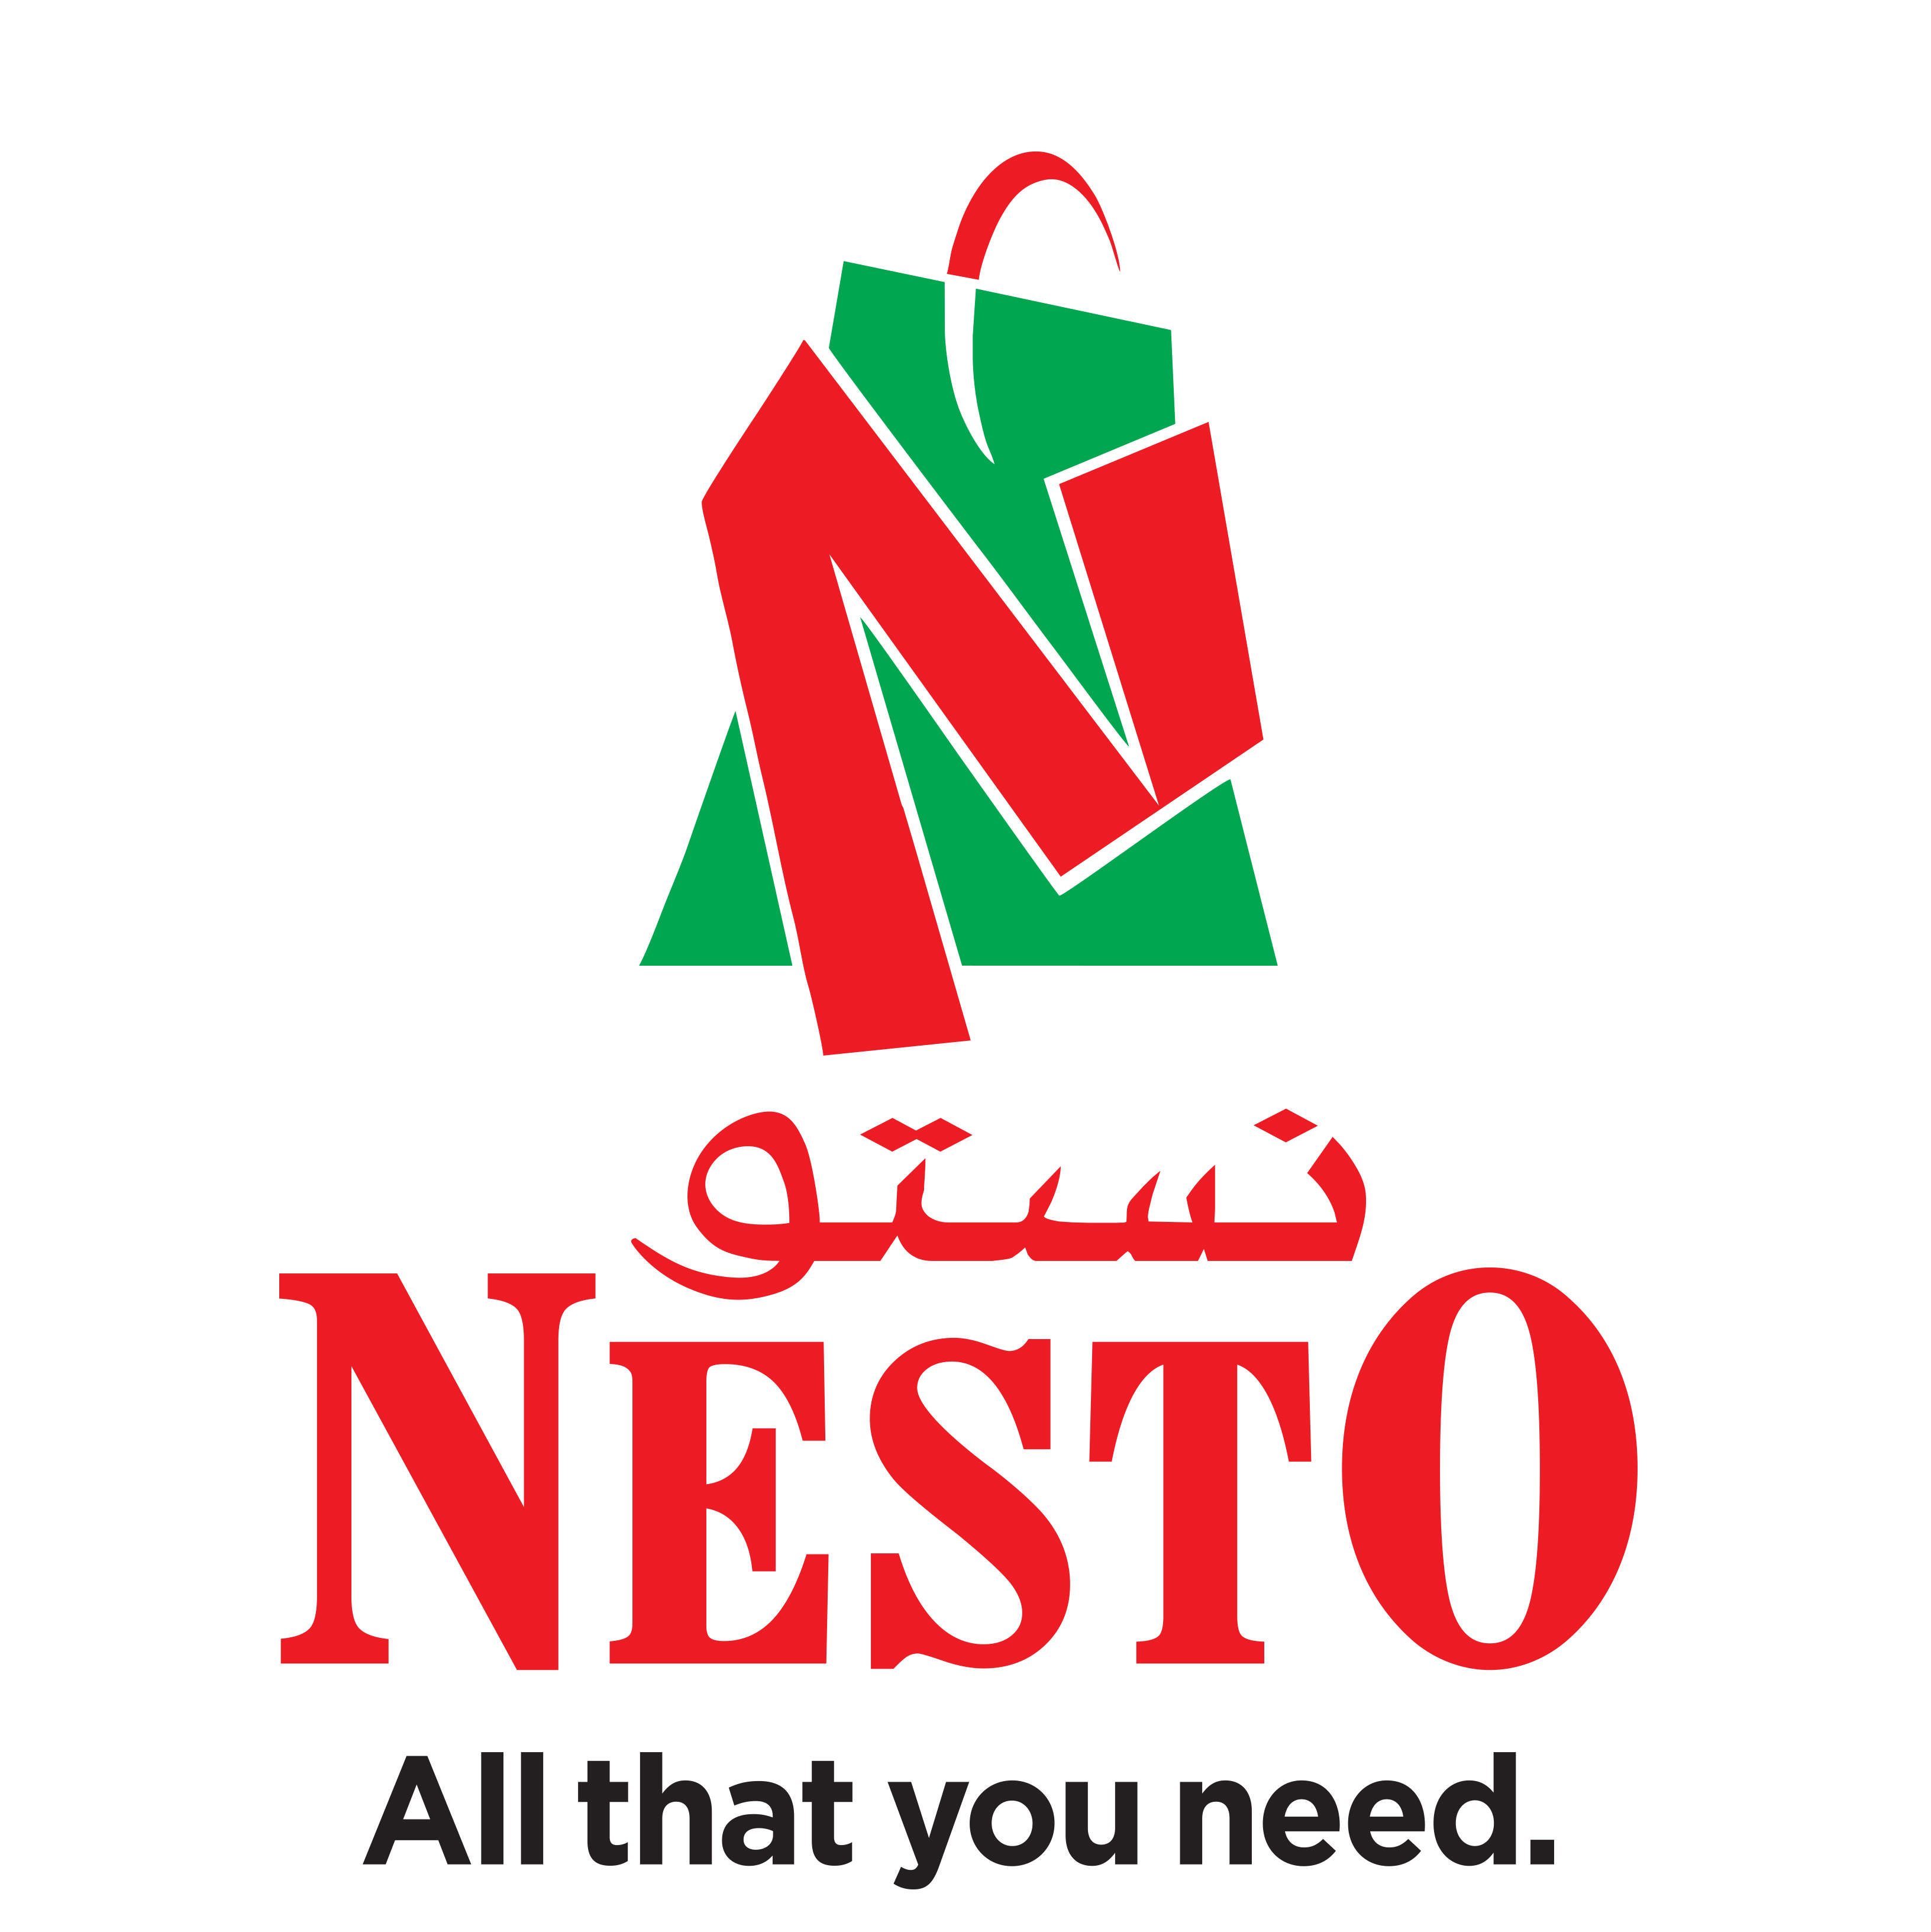 Nesto Hyper Market